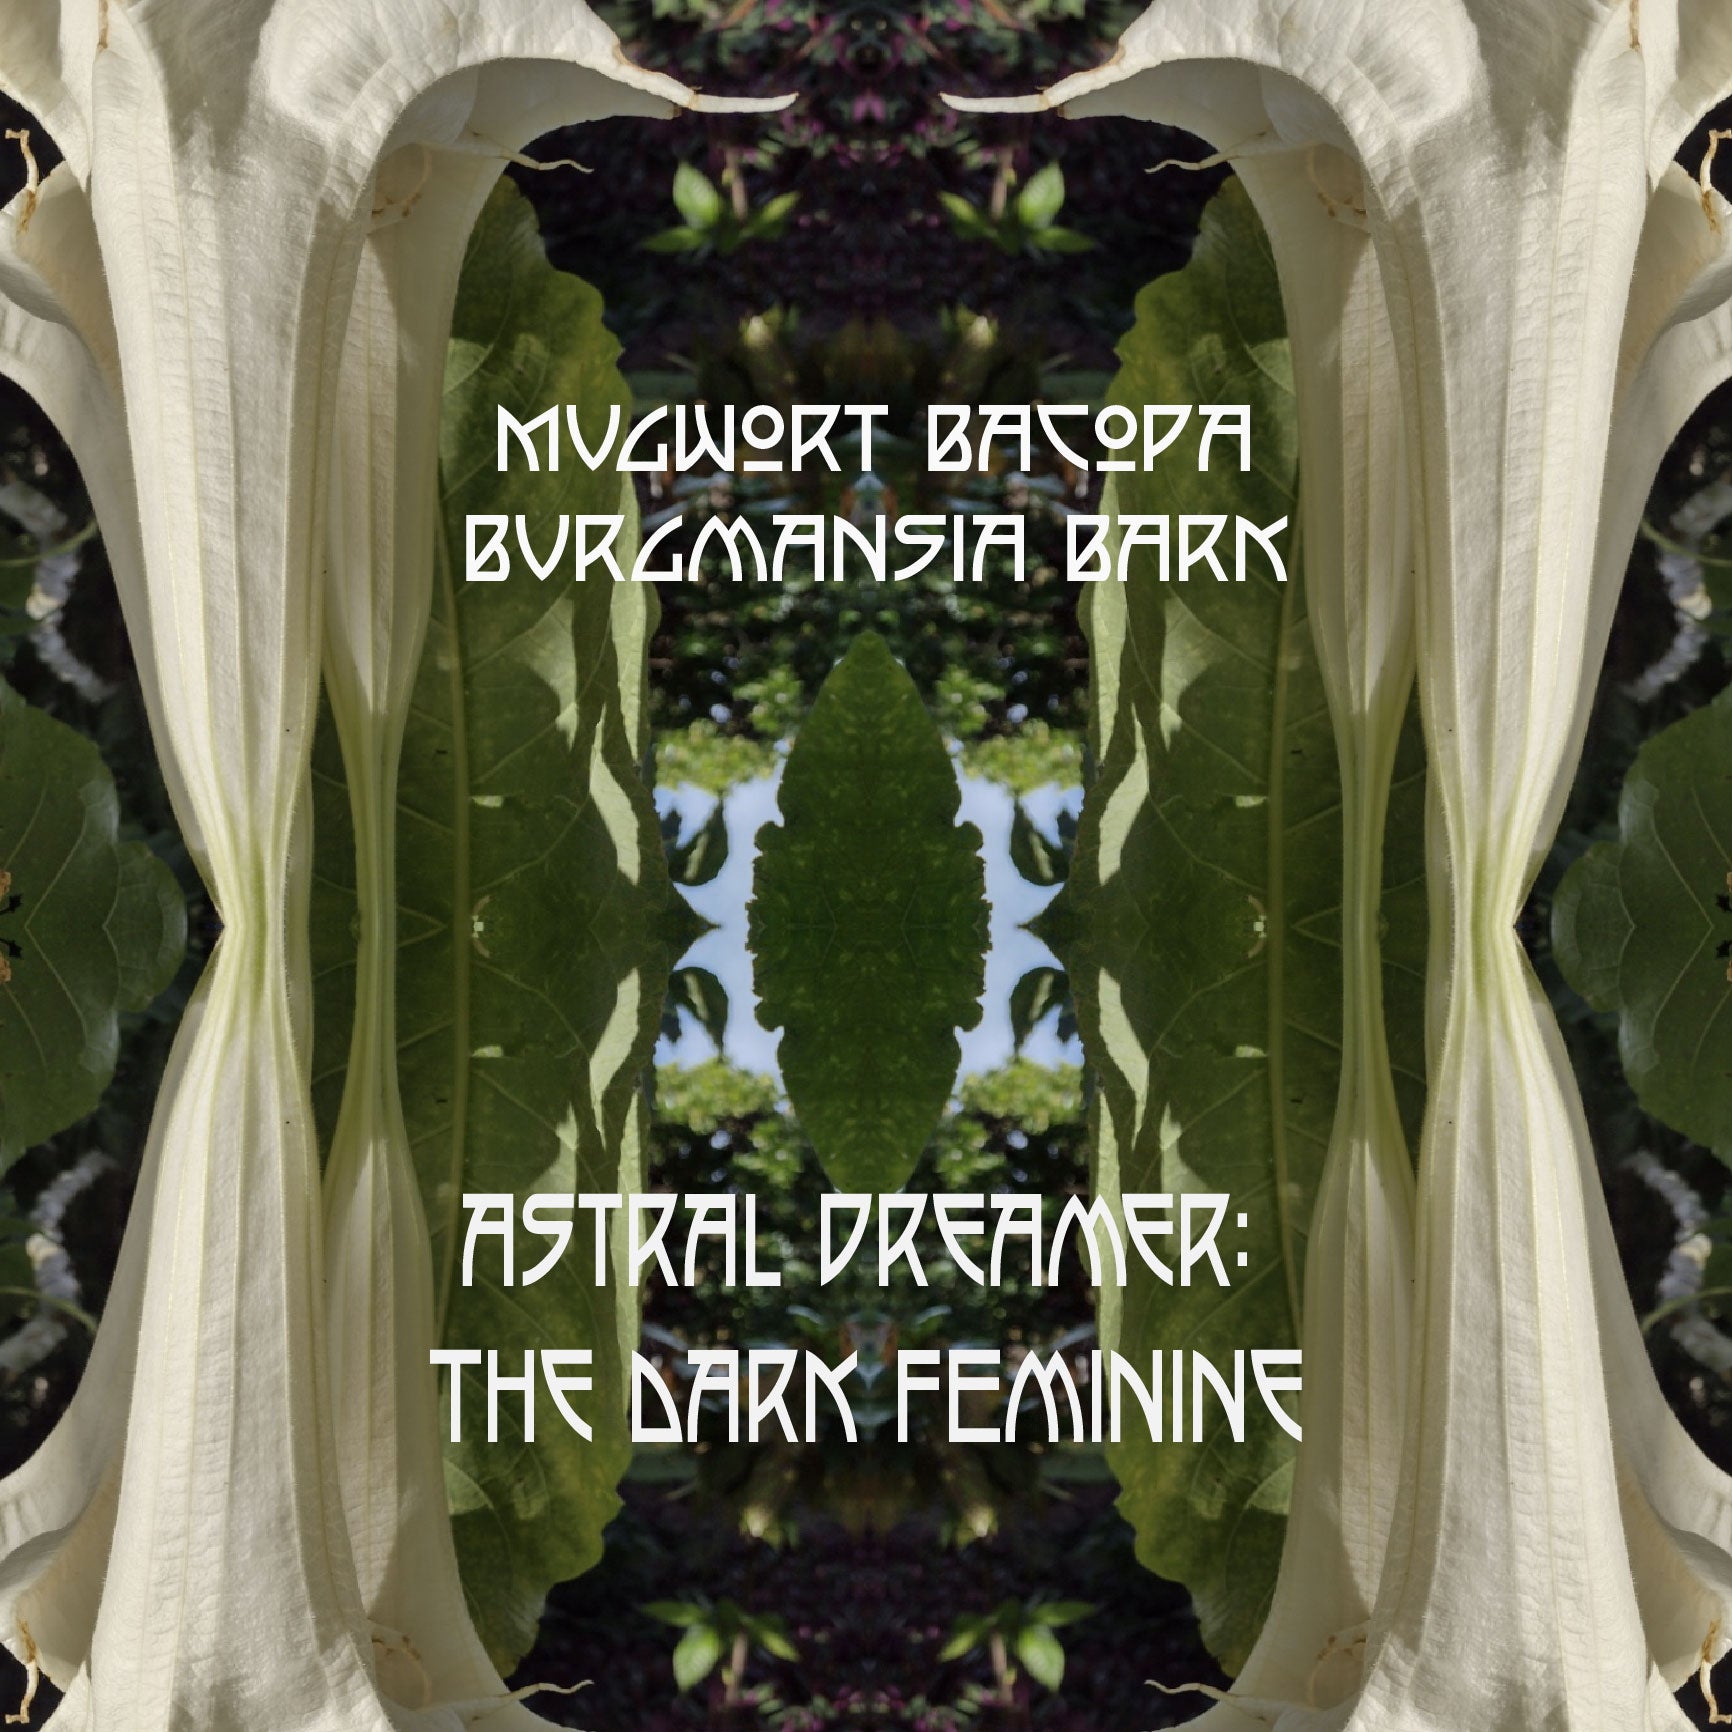 Mugwort, Bacopa, Burgmansia Bark. Astral Dreamer:The Dark Feminine